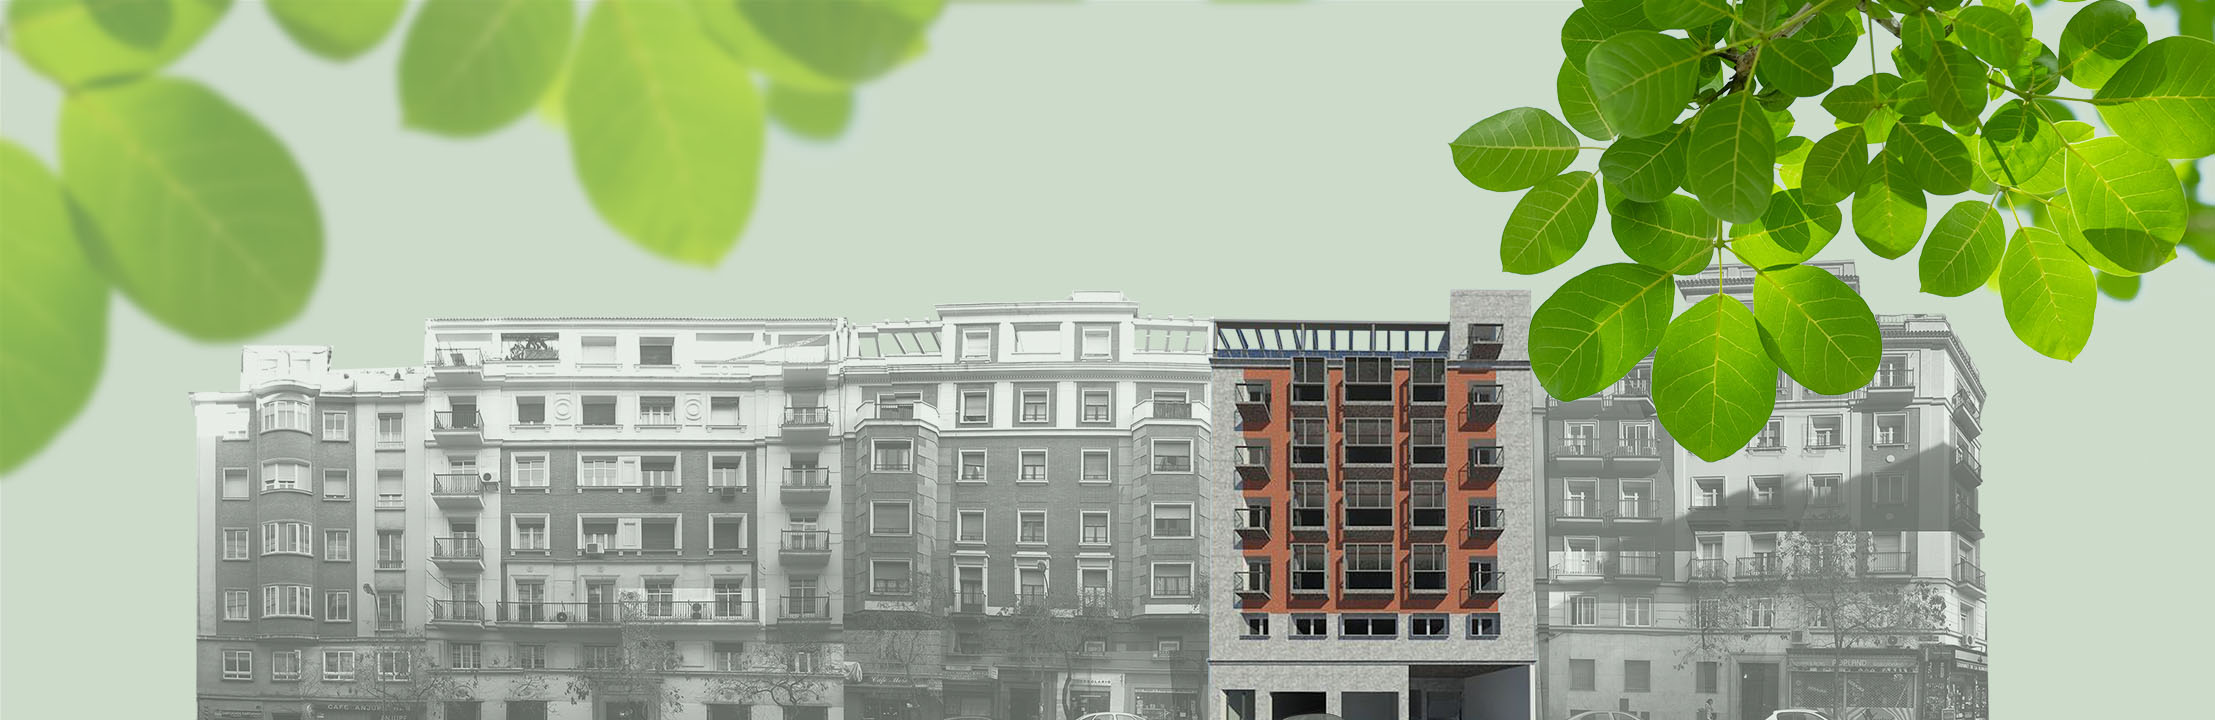 Edificio Proinca Moncloa con viviendas sostenibles de alquiler en la calle Fernández de los Ríos 104 de Madrid, junto a calle Princesa.